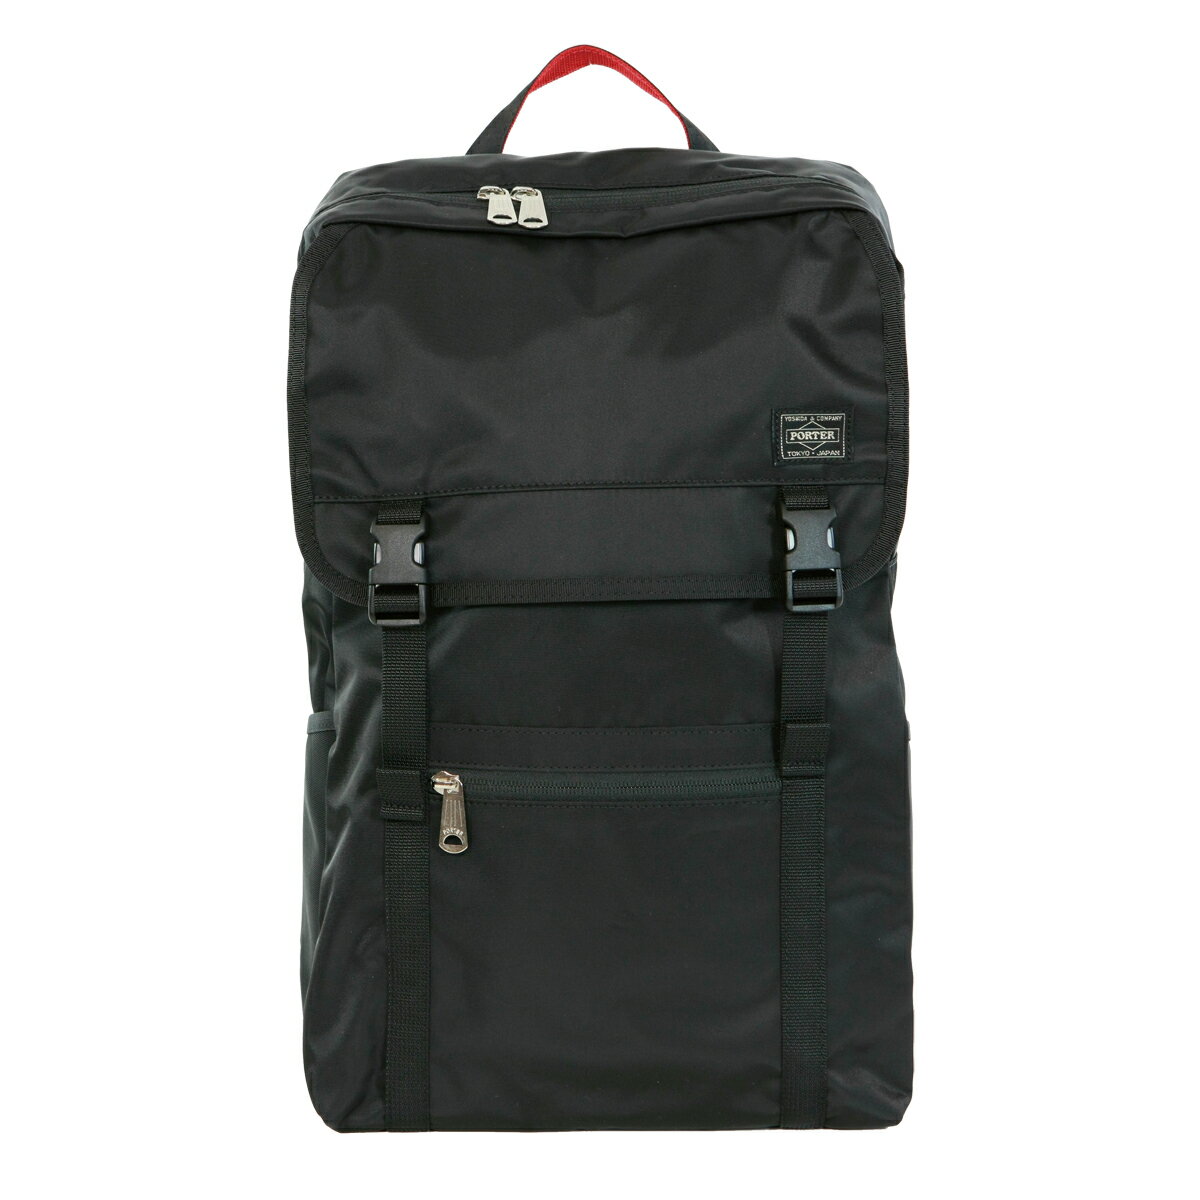 男女兼用バッグ, バックパック・リュック  PORTER L-fine MADE IN JAPAN A4 PORTER ILS rucksack backpack Daypack LYD383-18123 Black Red